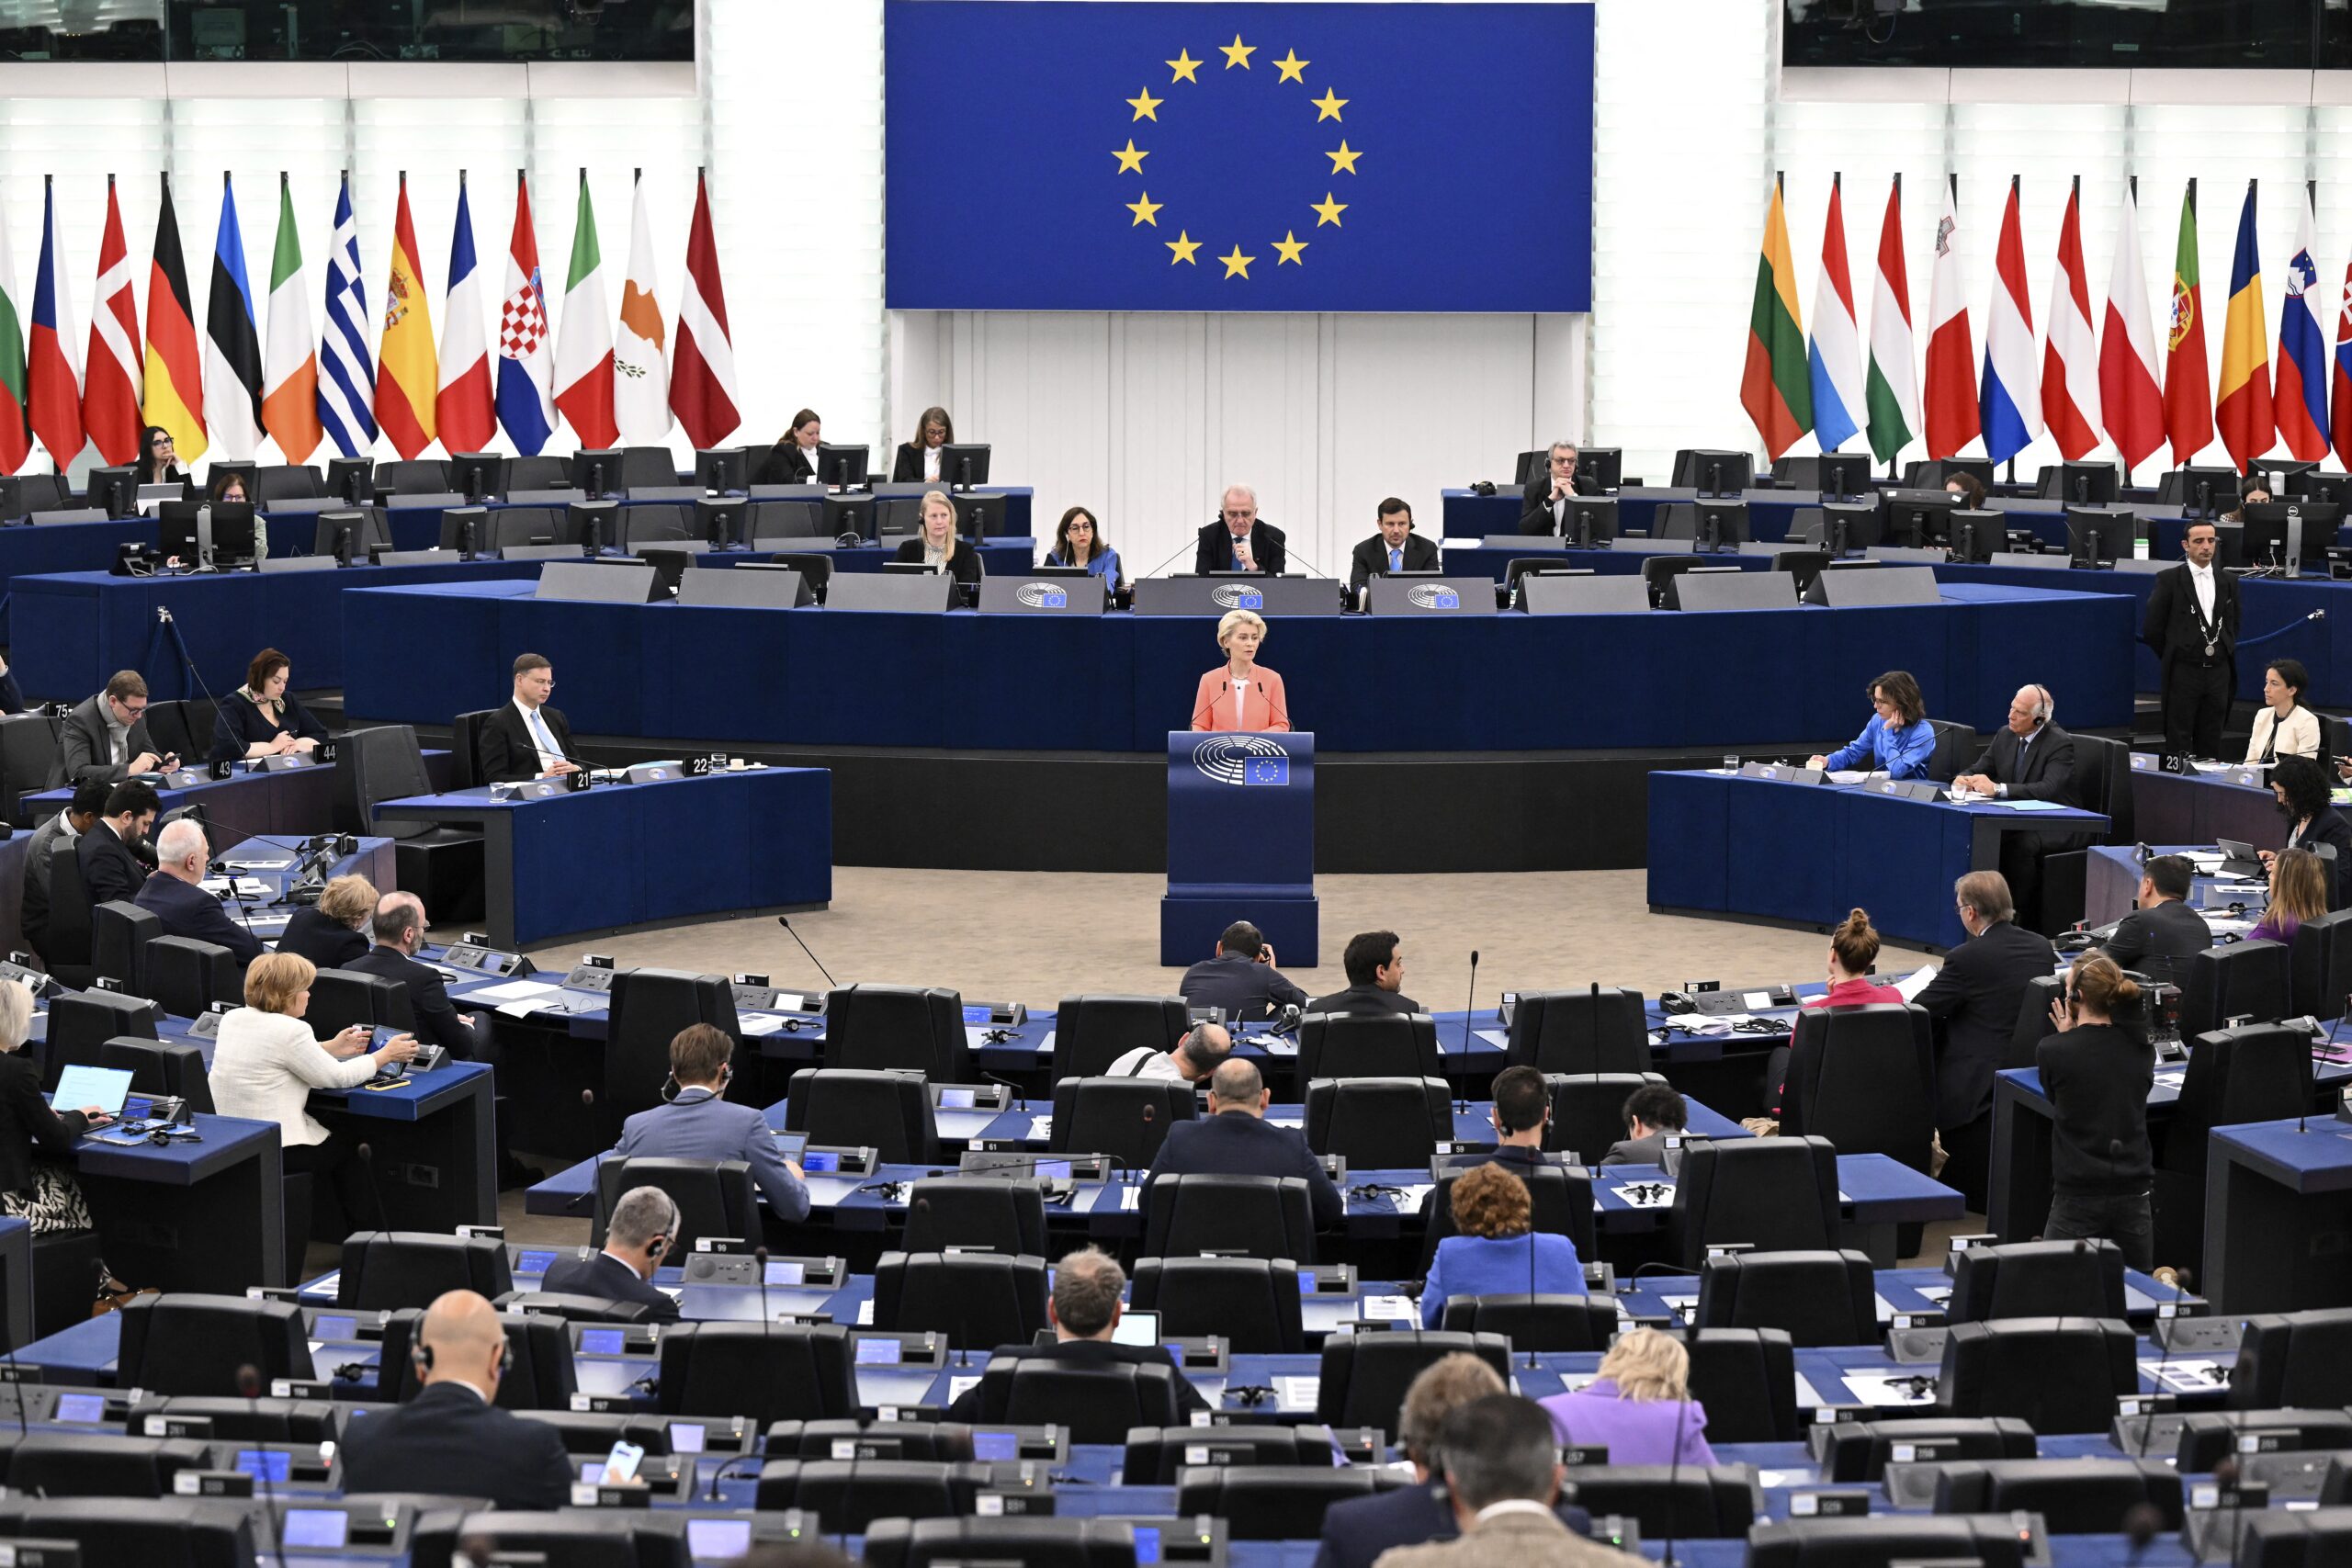 Γιατί τόσα περιστατικά με κατηγορίες και σκάνδαλα στο Ευρωπαϊκό Κοινοβούλιο;  